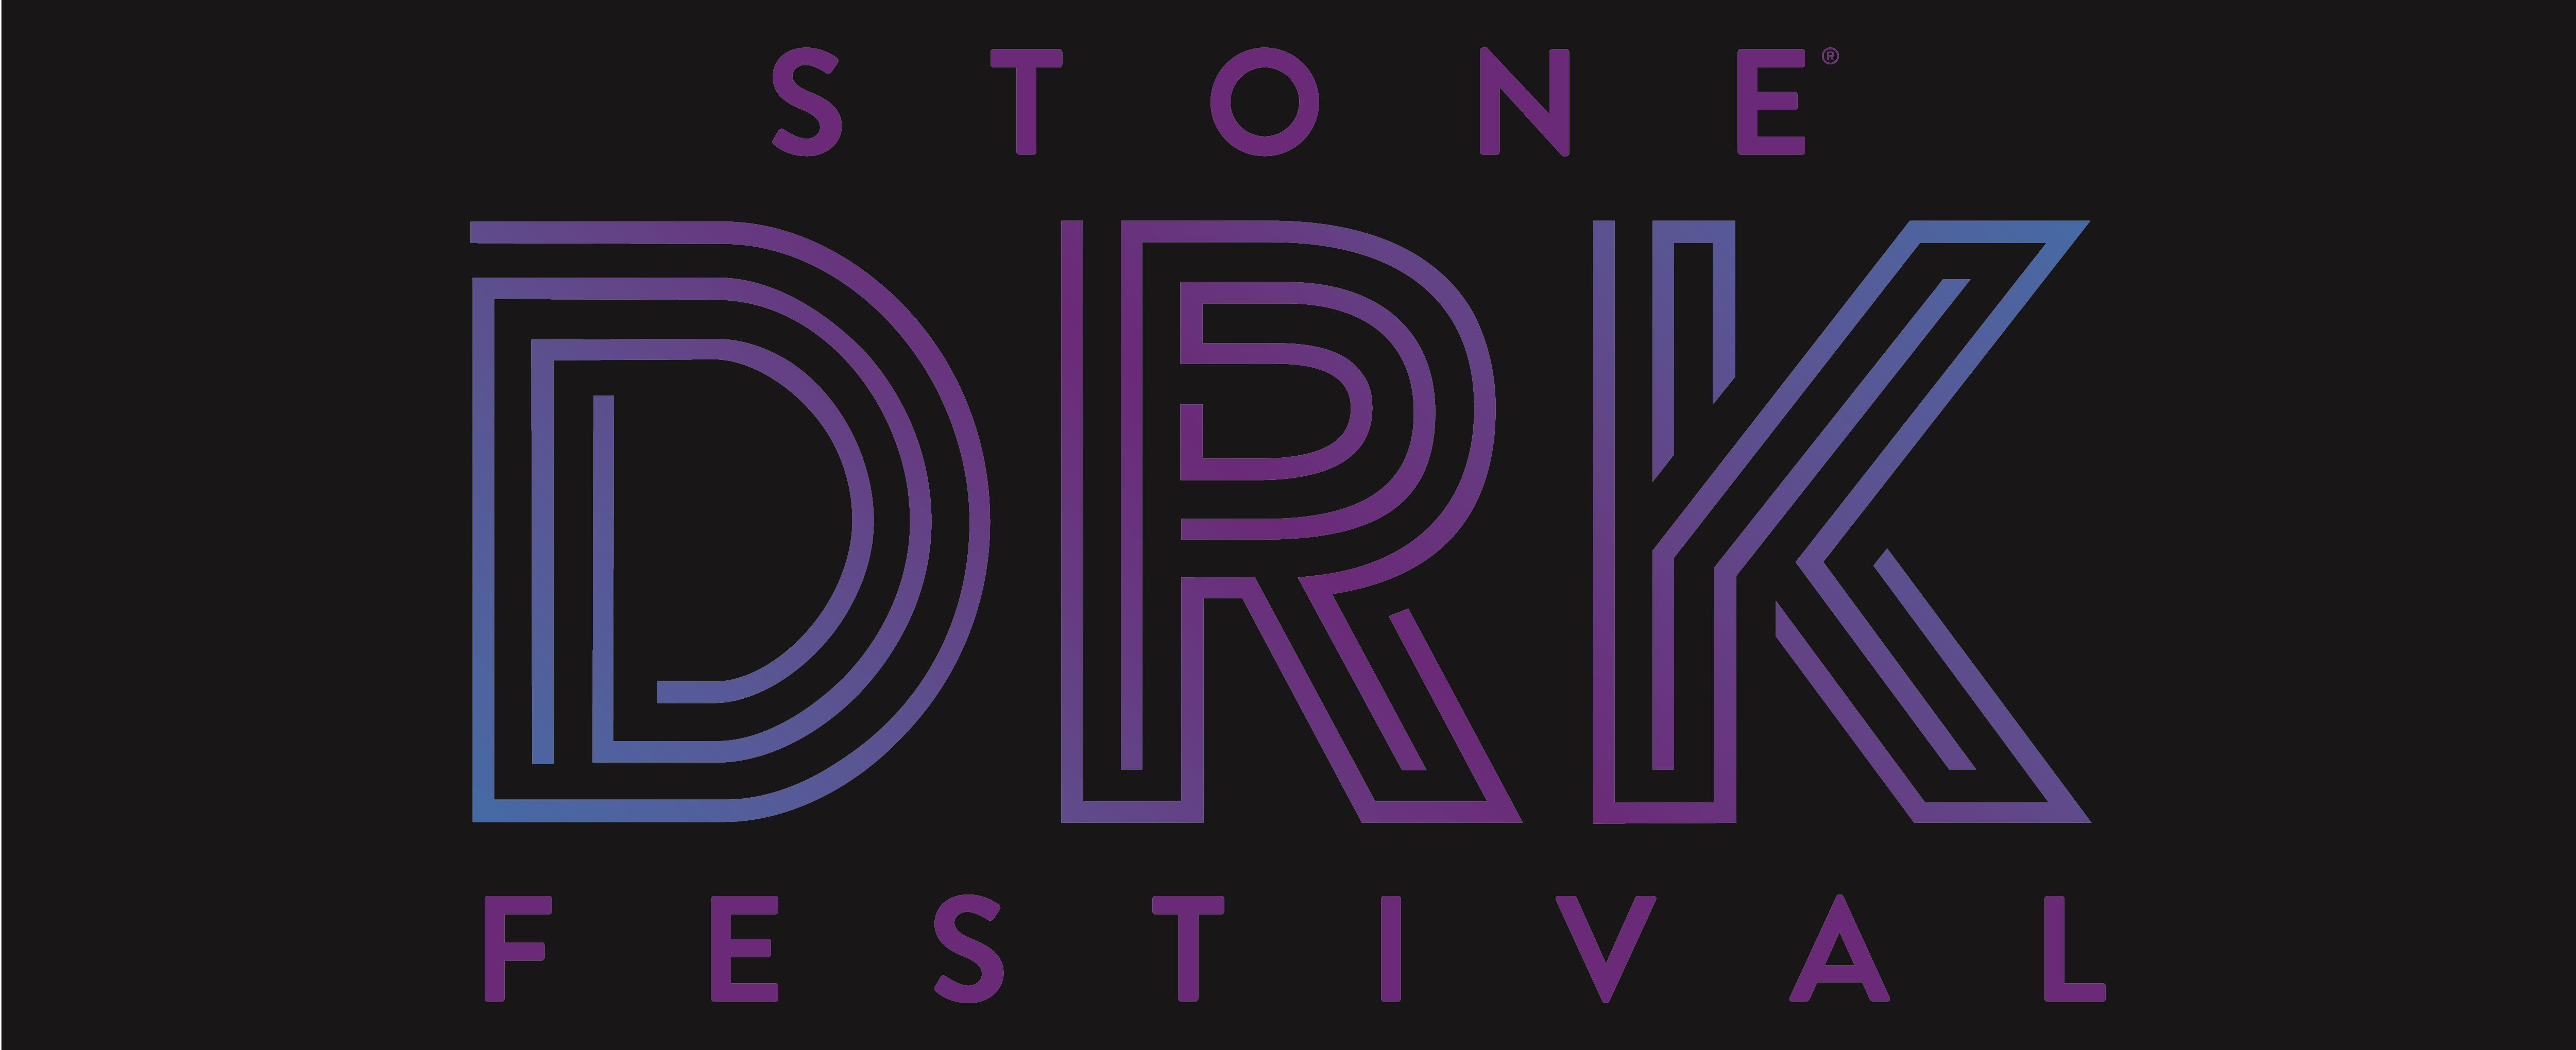 Stone DRK Festival